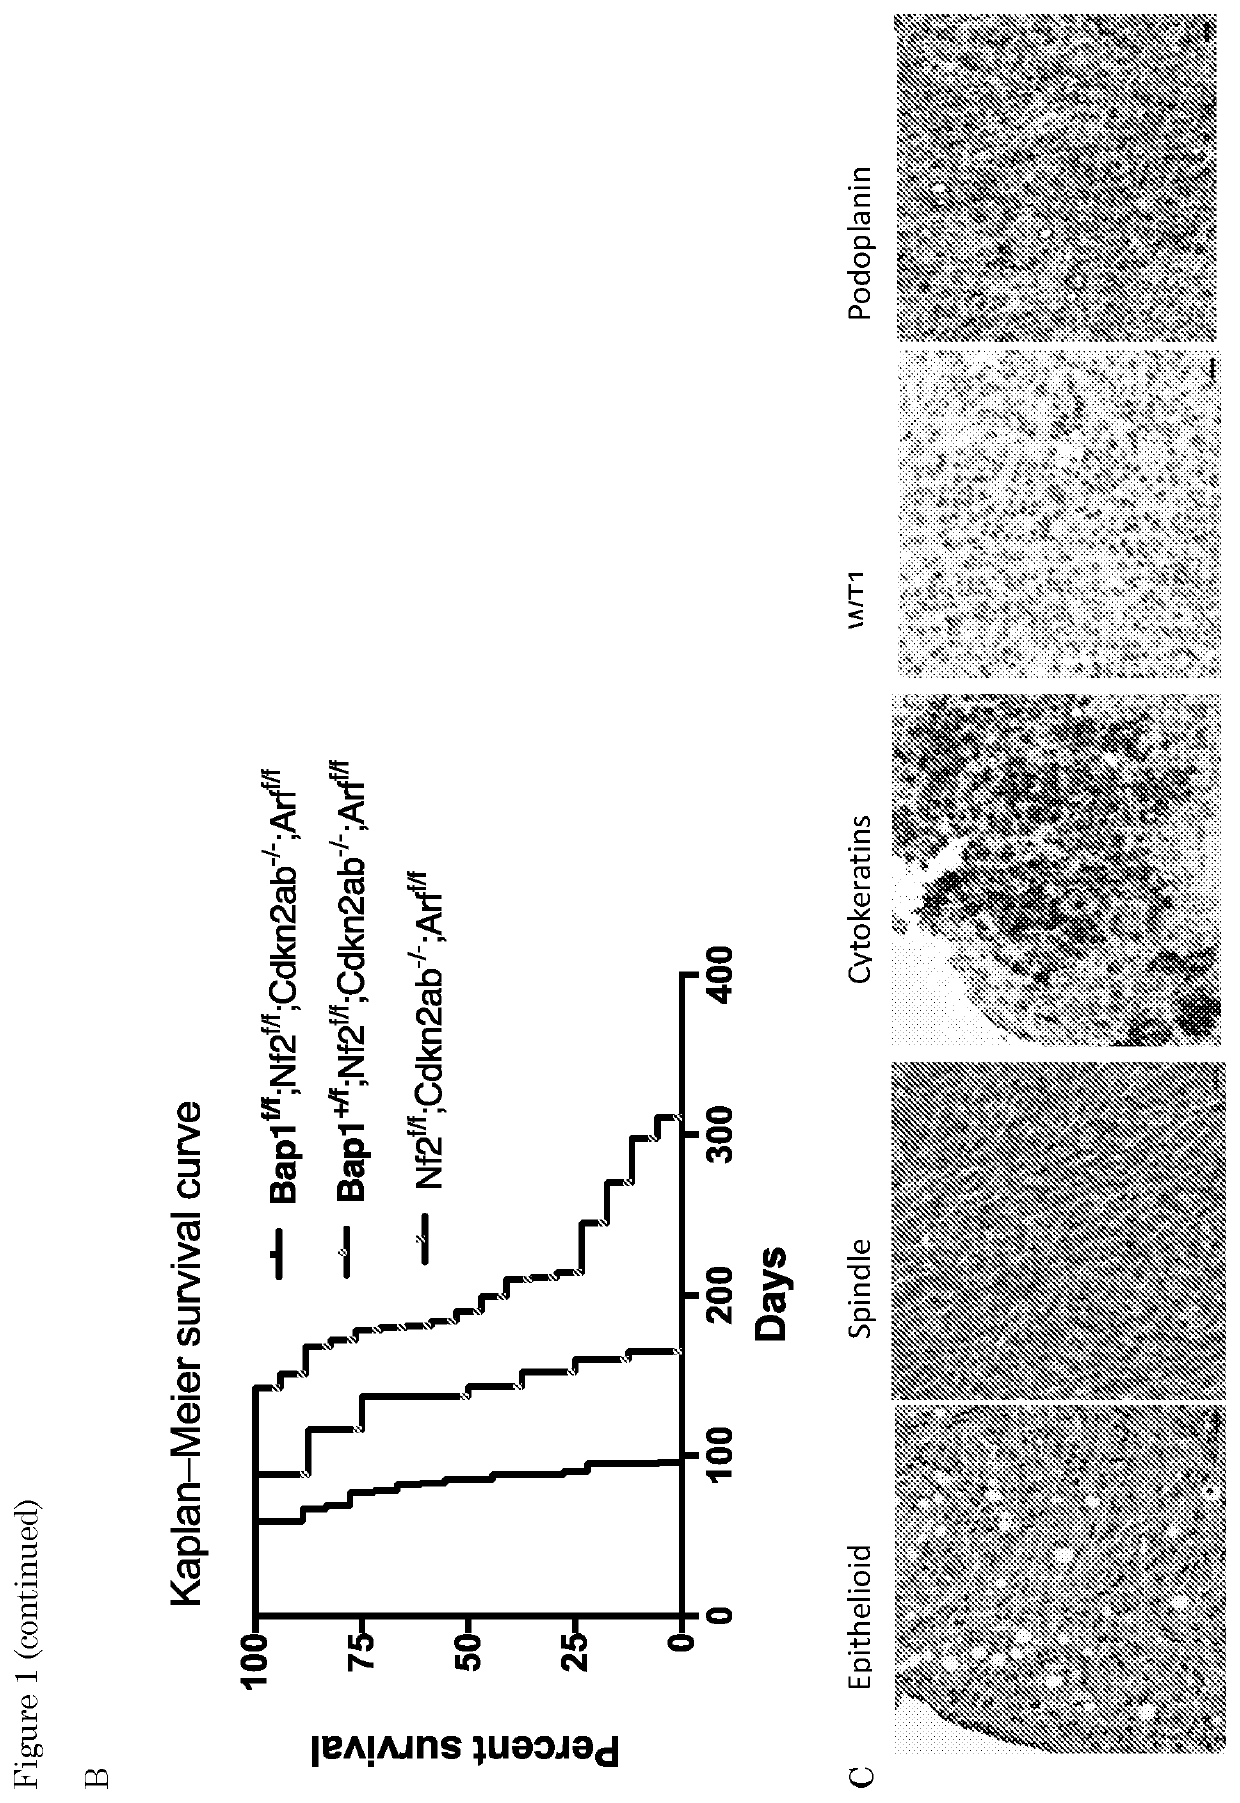 Ezh2- FGFR inhibition in cancer